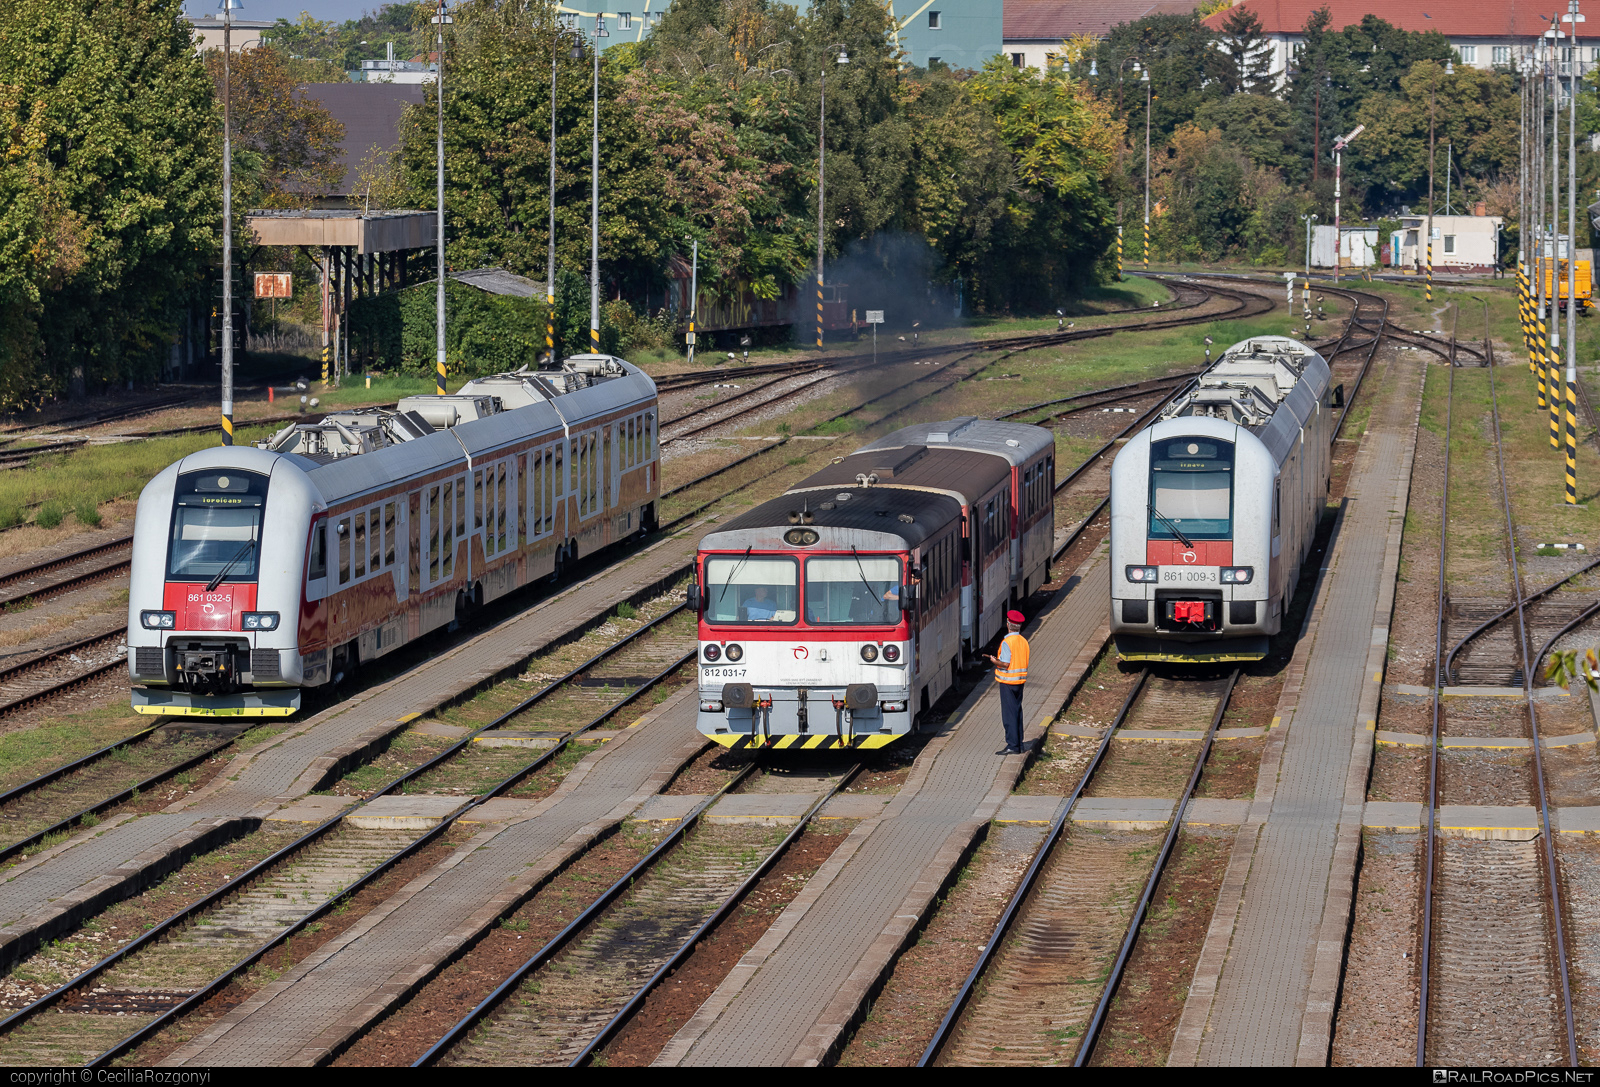 ŽOS Zvolen Class 812 - 812 031-7 operated by Železničná Spoločnost' Slovensko, a.s. #ZeleznicnaSpolocnostSlovensko #zoszvolen #zoszvolen812 #zssk